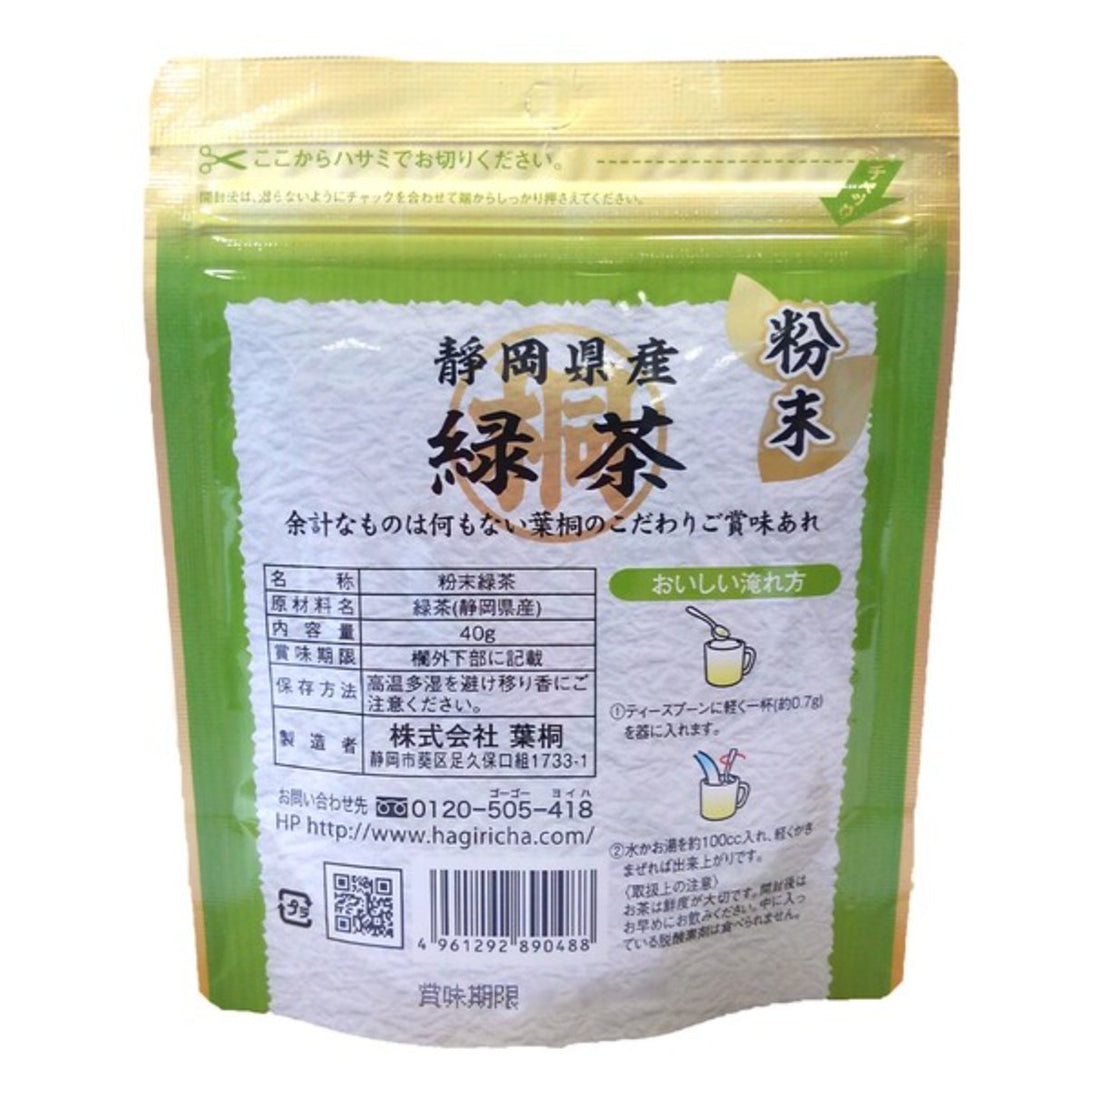 Hagiri Shizuoka Marutou powder green tea 40g - NihonMura